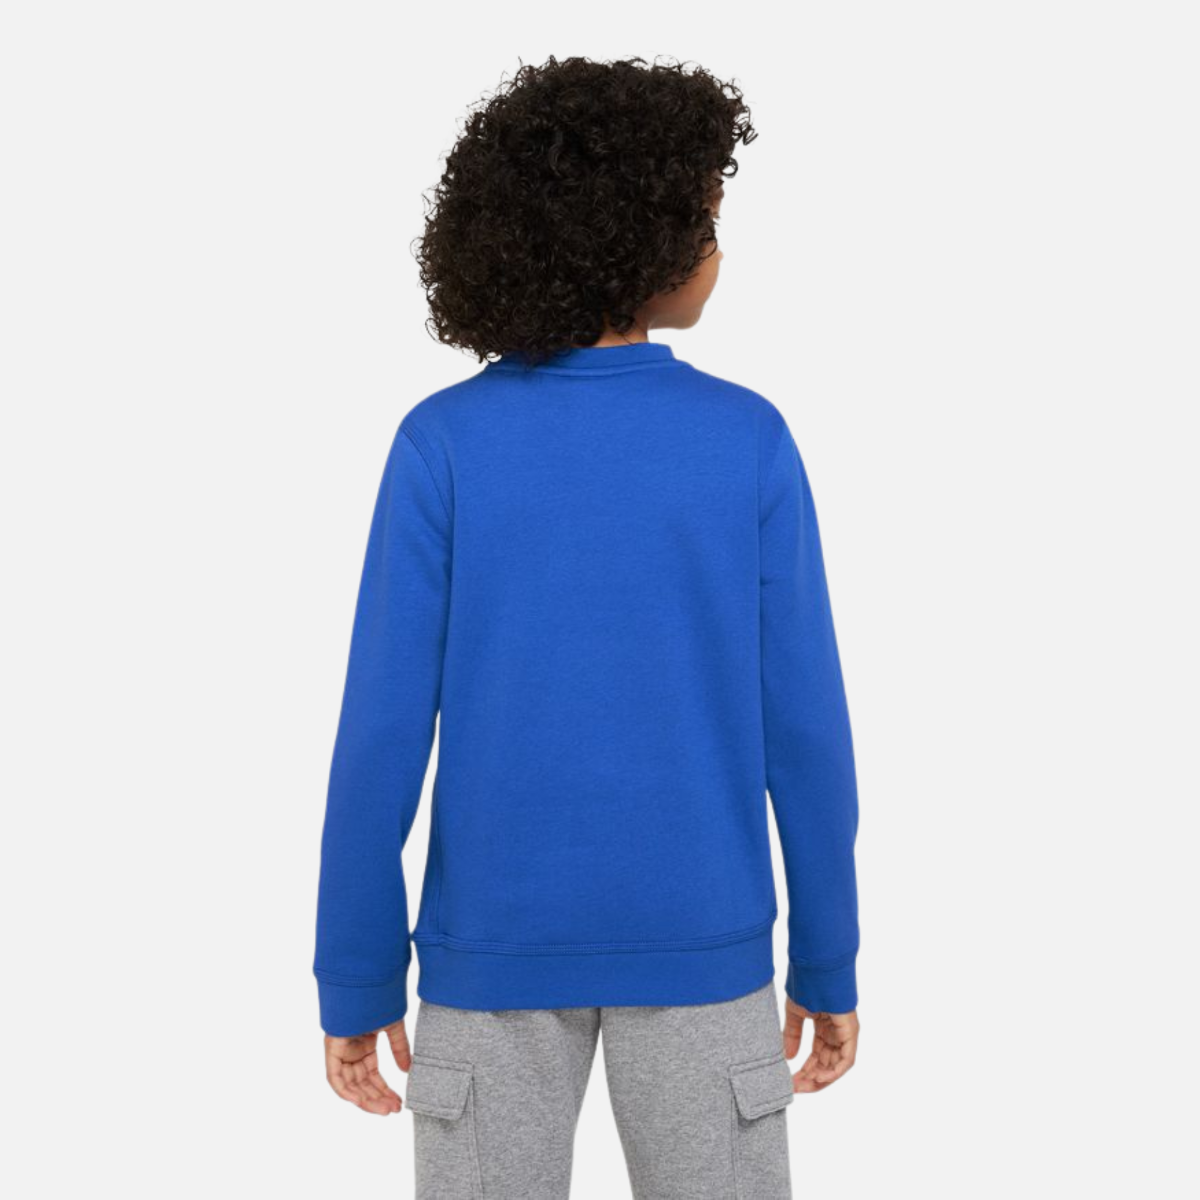 Sweat Nike Tech Fleece Junior - Bleu/Blanc/Rouge